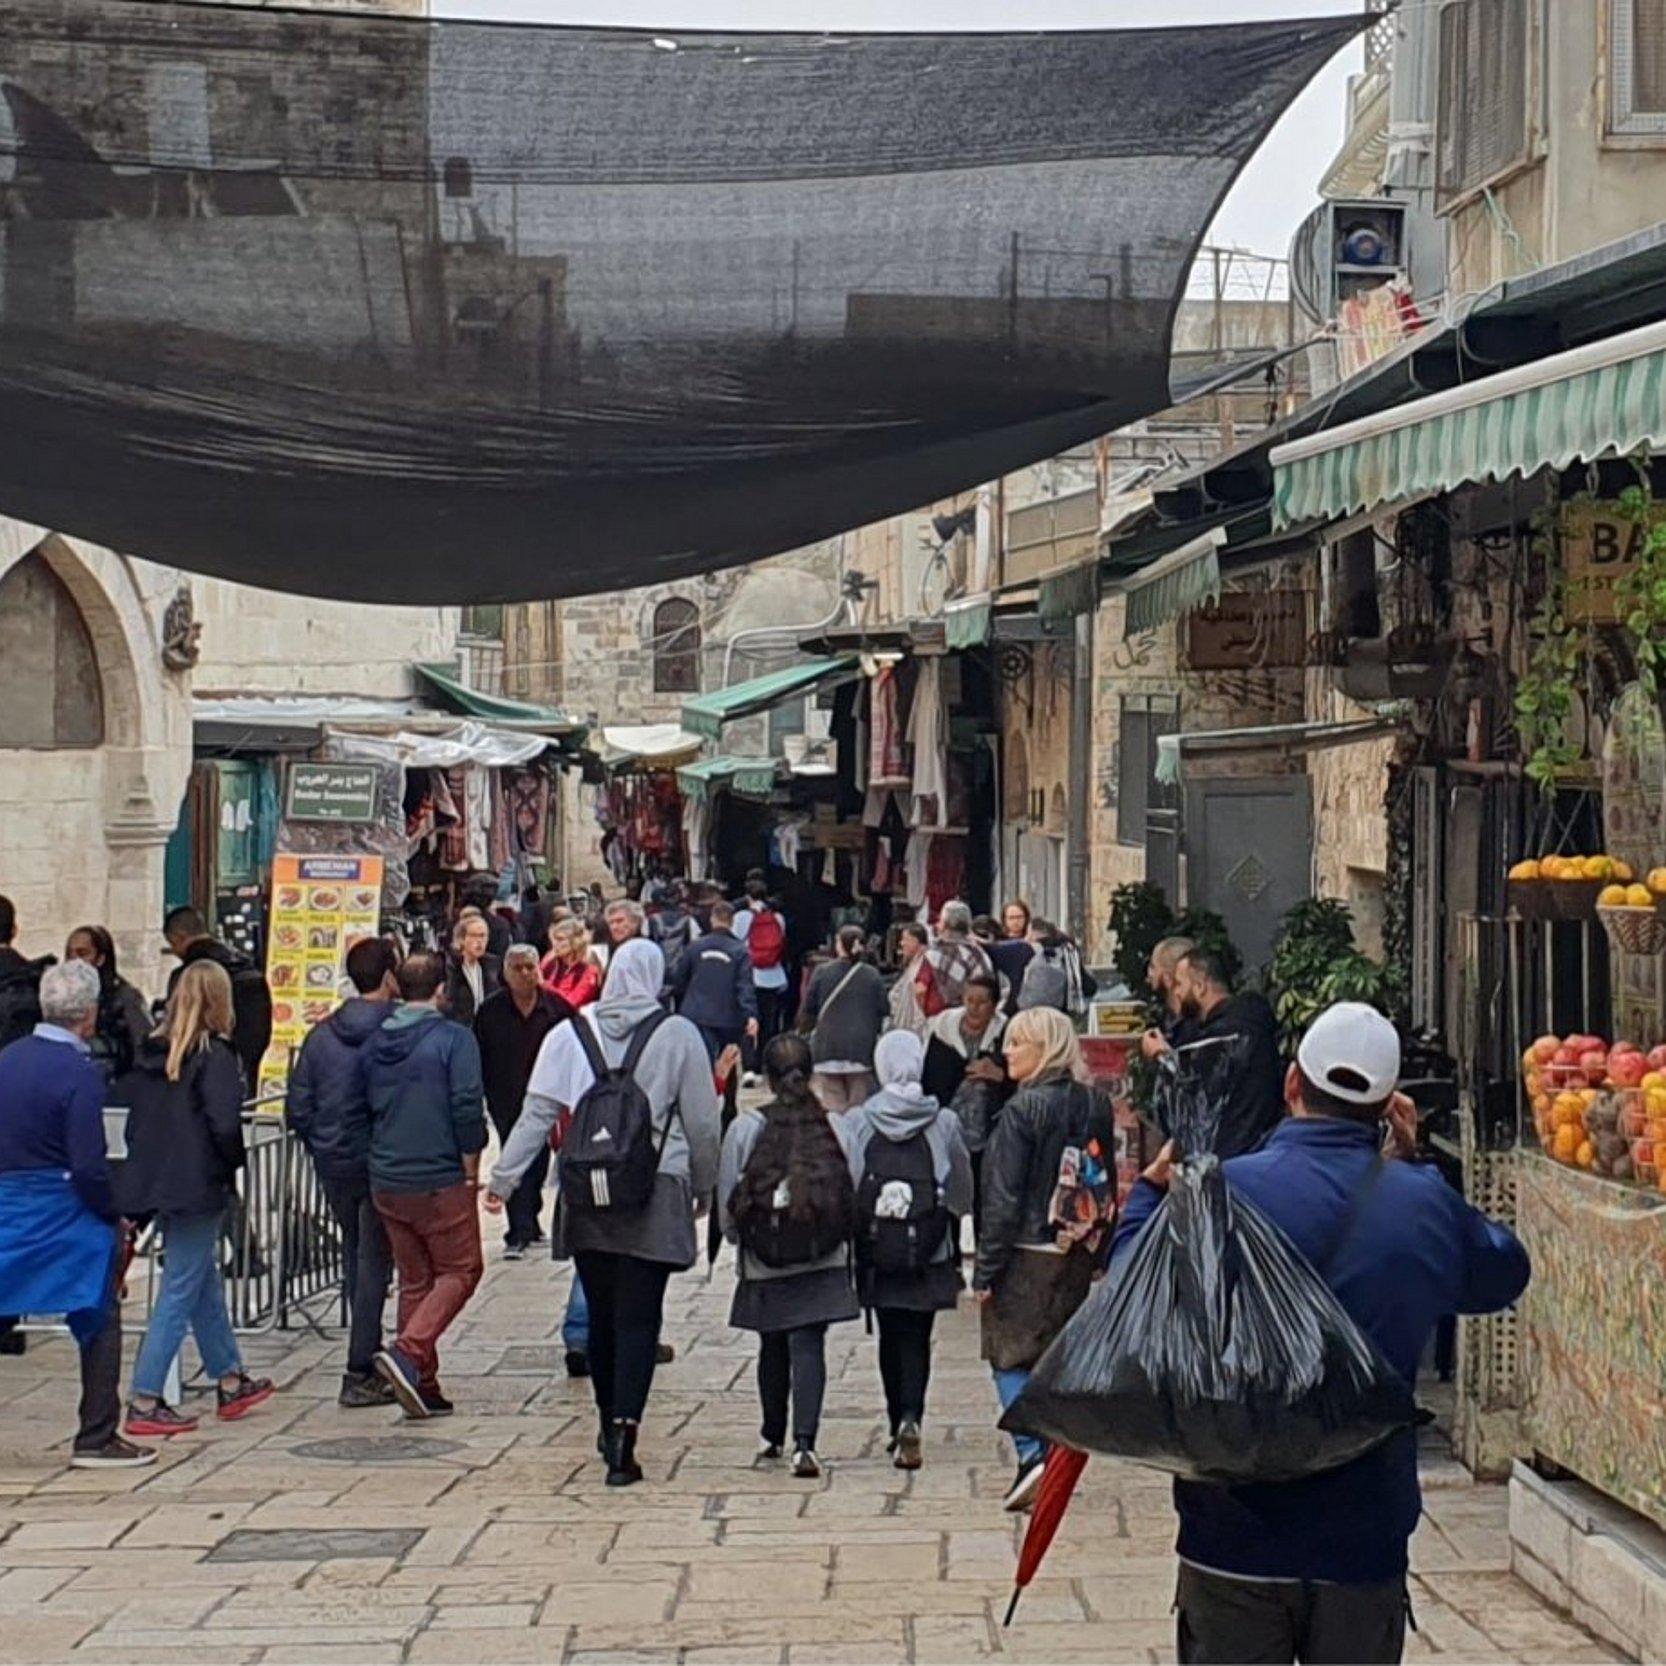 Ein belebte Straße in der Jerusalemer Altstadt. Israelische Sicherheitskräfte haben dort einen Posten errichtet. Touristen und Einheimische laufen vorbei.